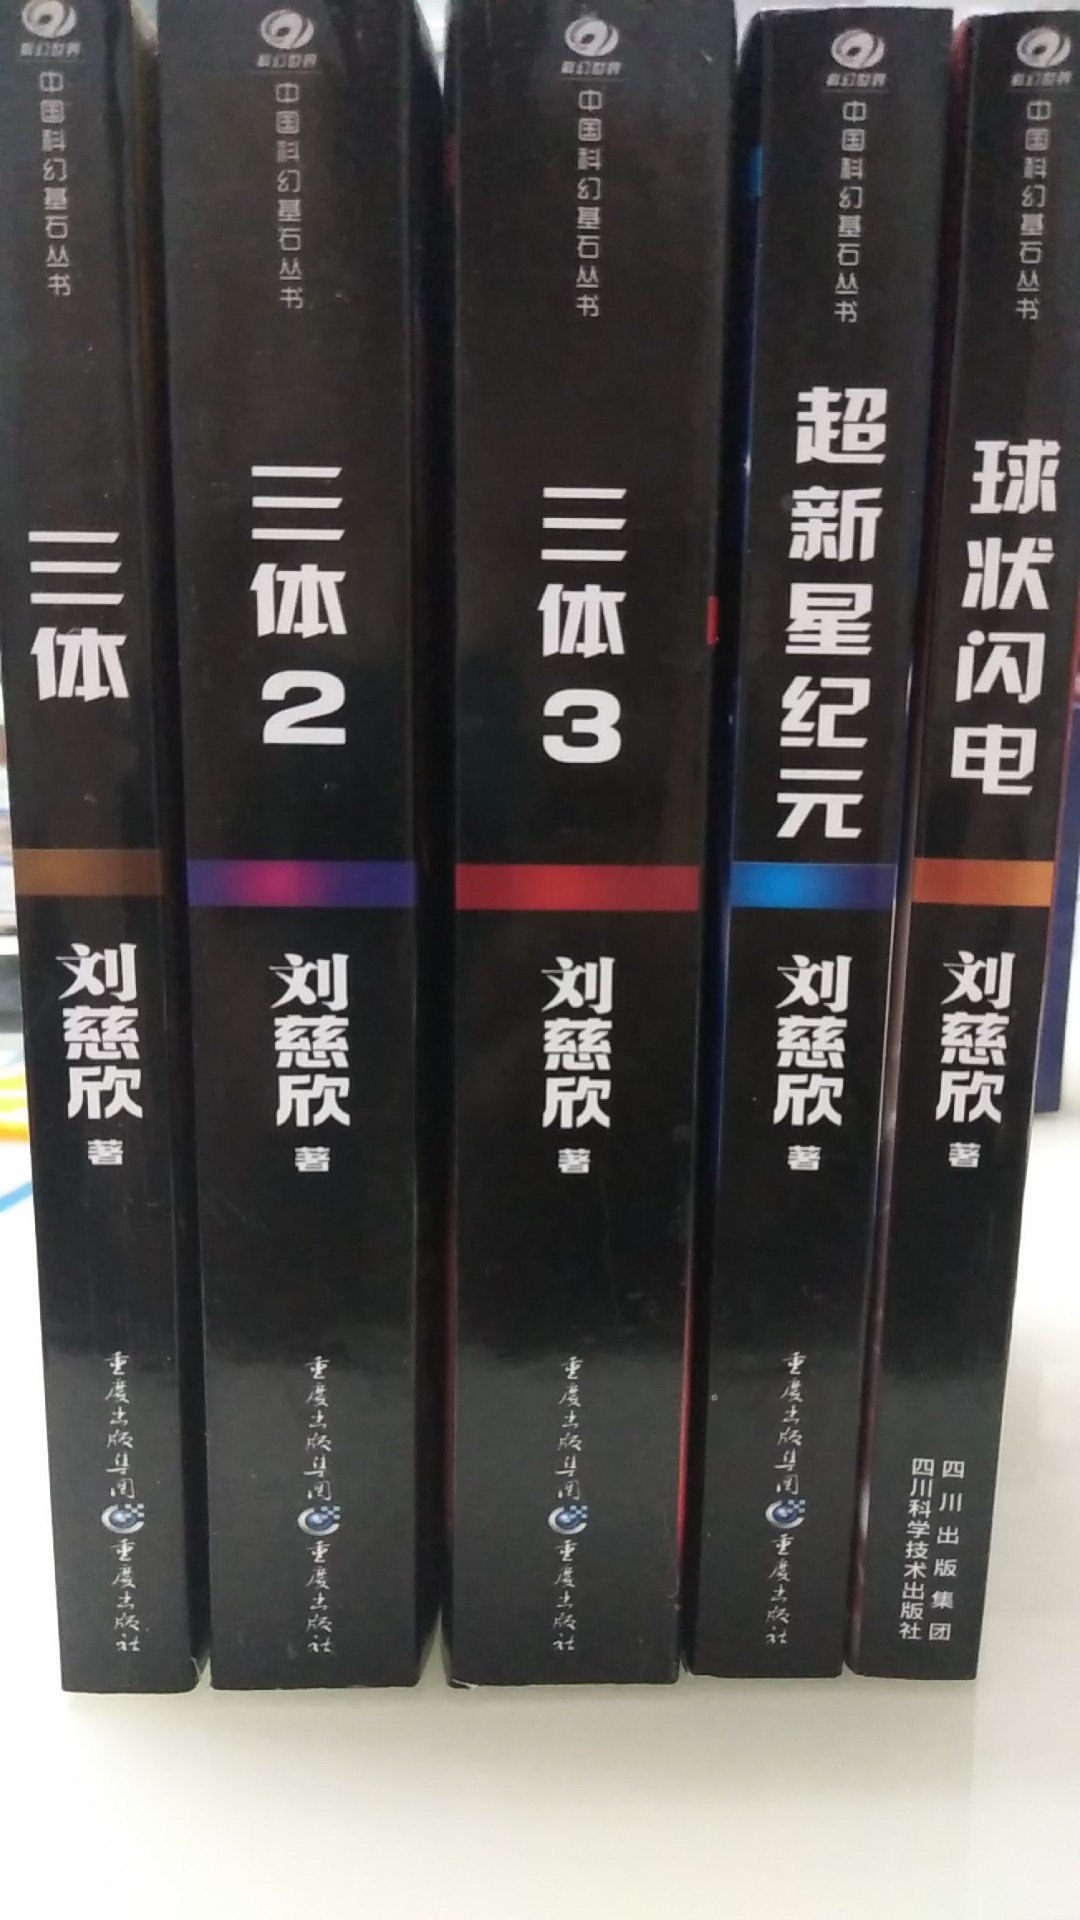 终于等到你，刘慈欣的科幻小说作品我都很喜欢，支持中国作家，支持正版，本套图书质量很好。快乐读书。快递速度好快。支持。